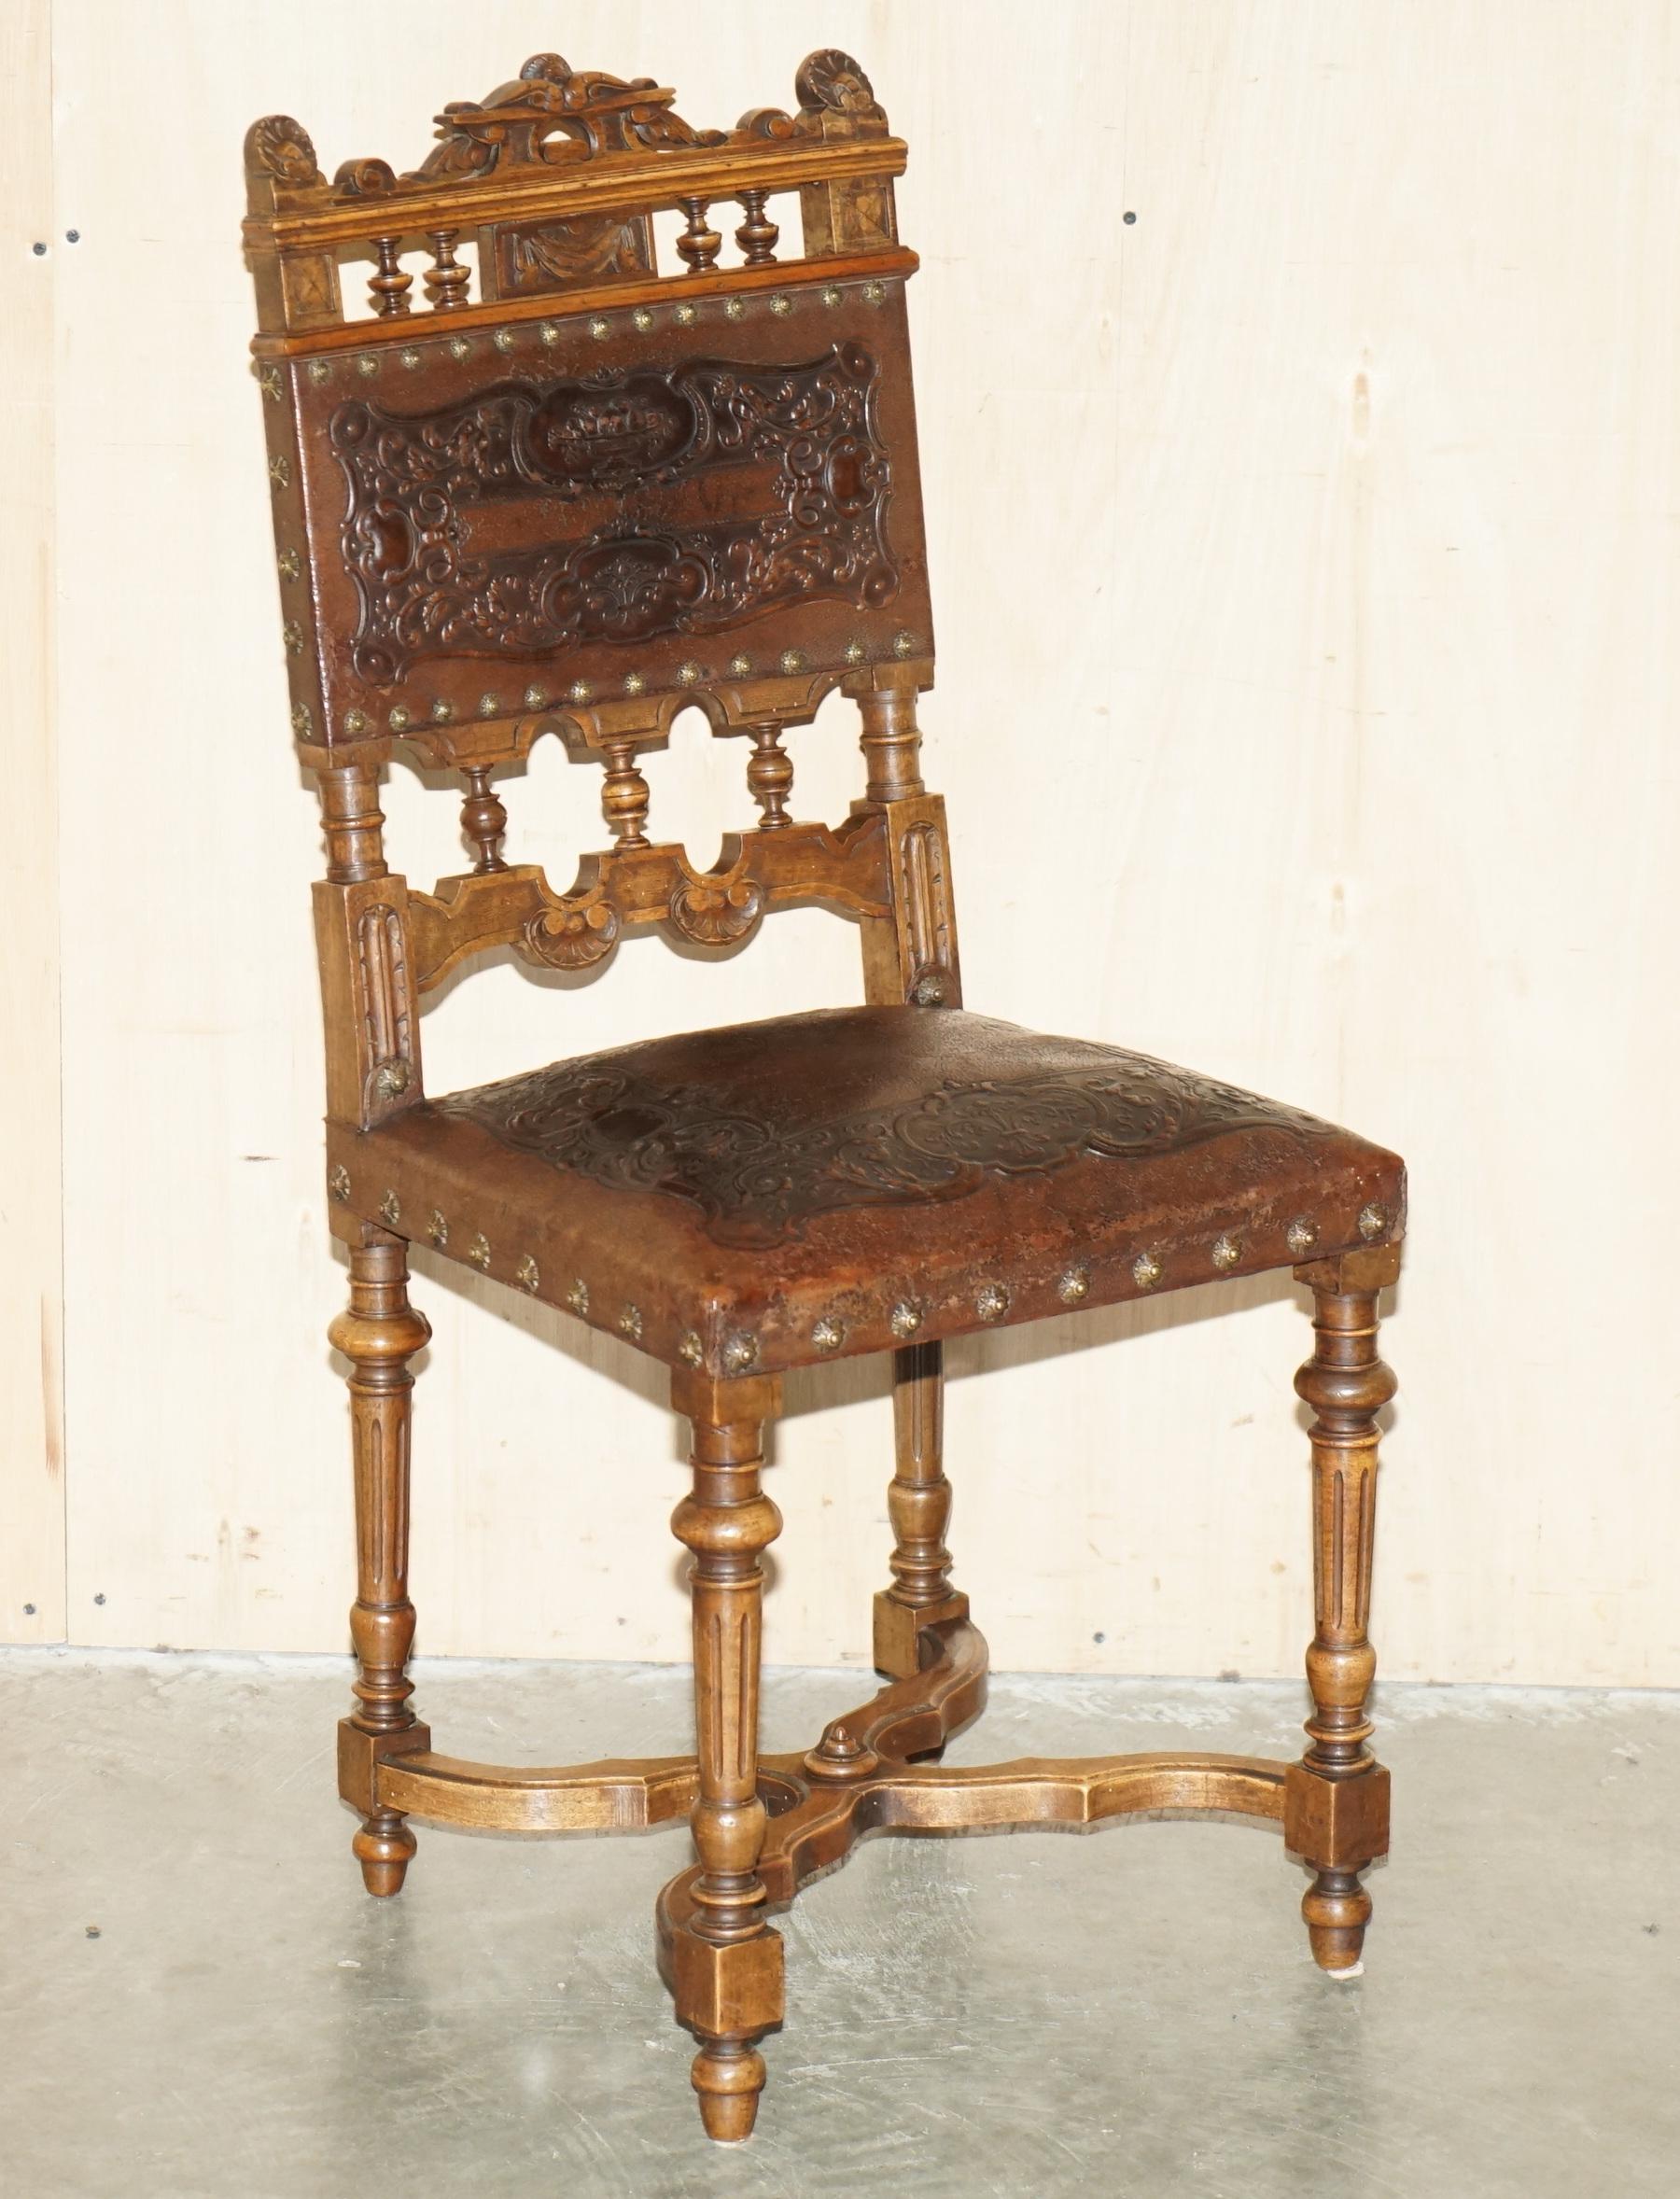 Royal House Antiques

Royal House Antiques freut sich, dieses außergewöhnliche Set von sechs Esszimmerstühlen aus französischer Eiche mit geprägter brauner Lederpolsterung von Henry II. um 1880 zum Verkauf anzubieten.

Bitte beachten Sie die